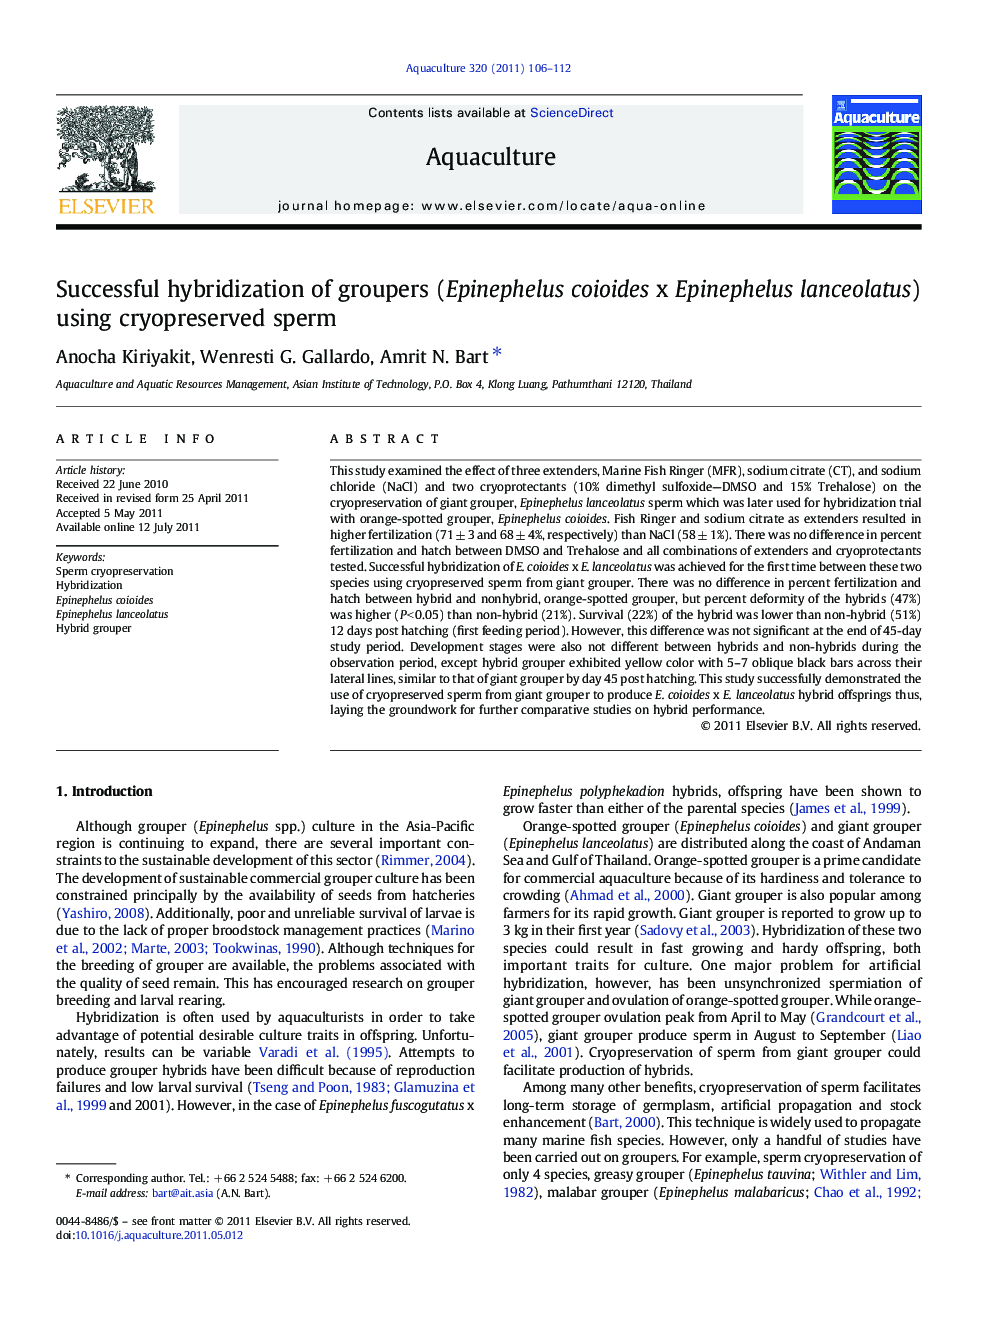 Successful hybridization of groupers (Epinephelus coioides x Epinephelus lanceolatus) using cryopreserved sperm